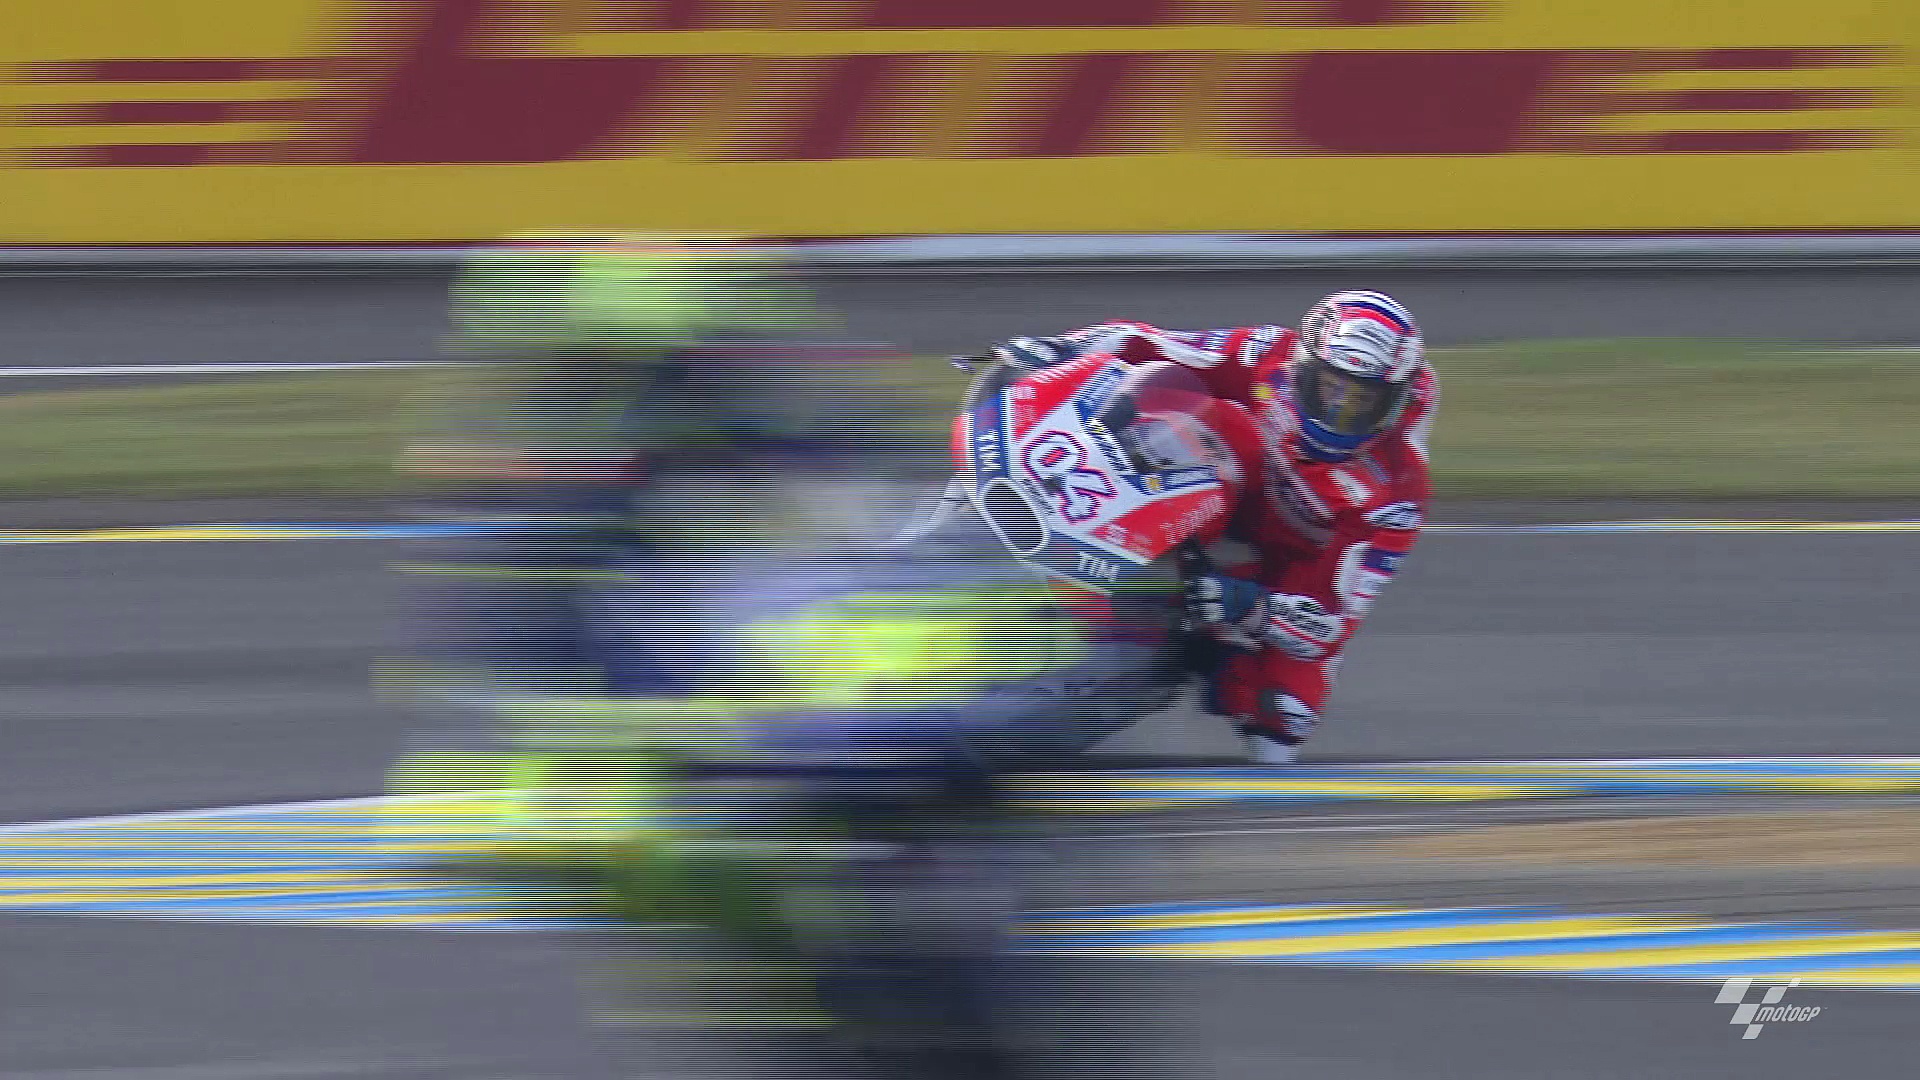 #FrenchGP MotoGP Ducati